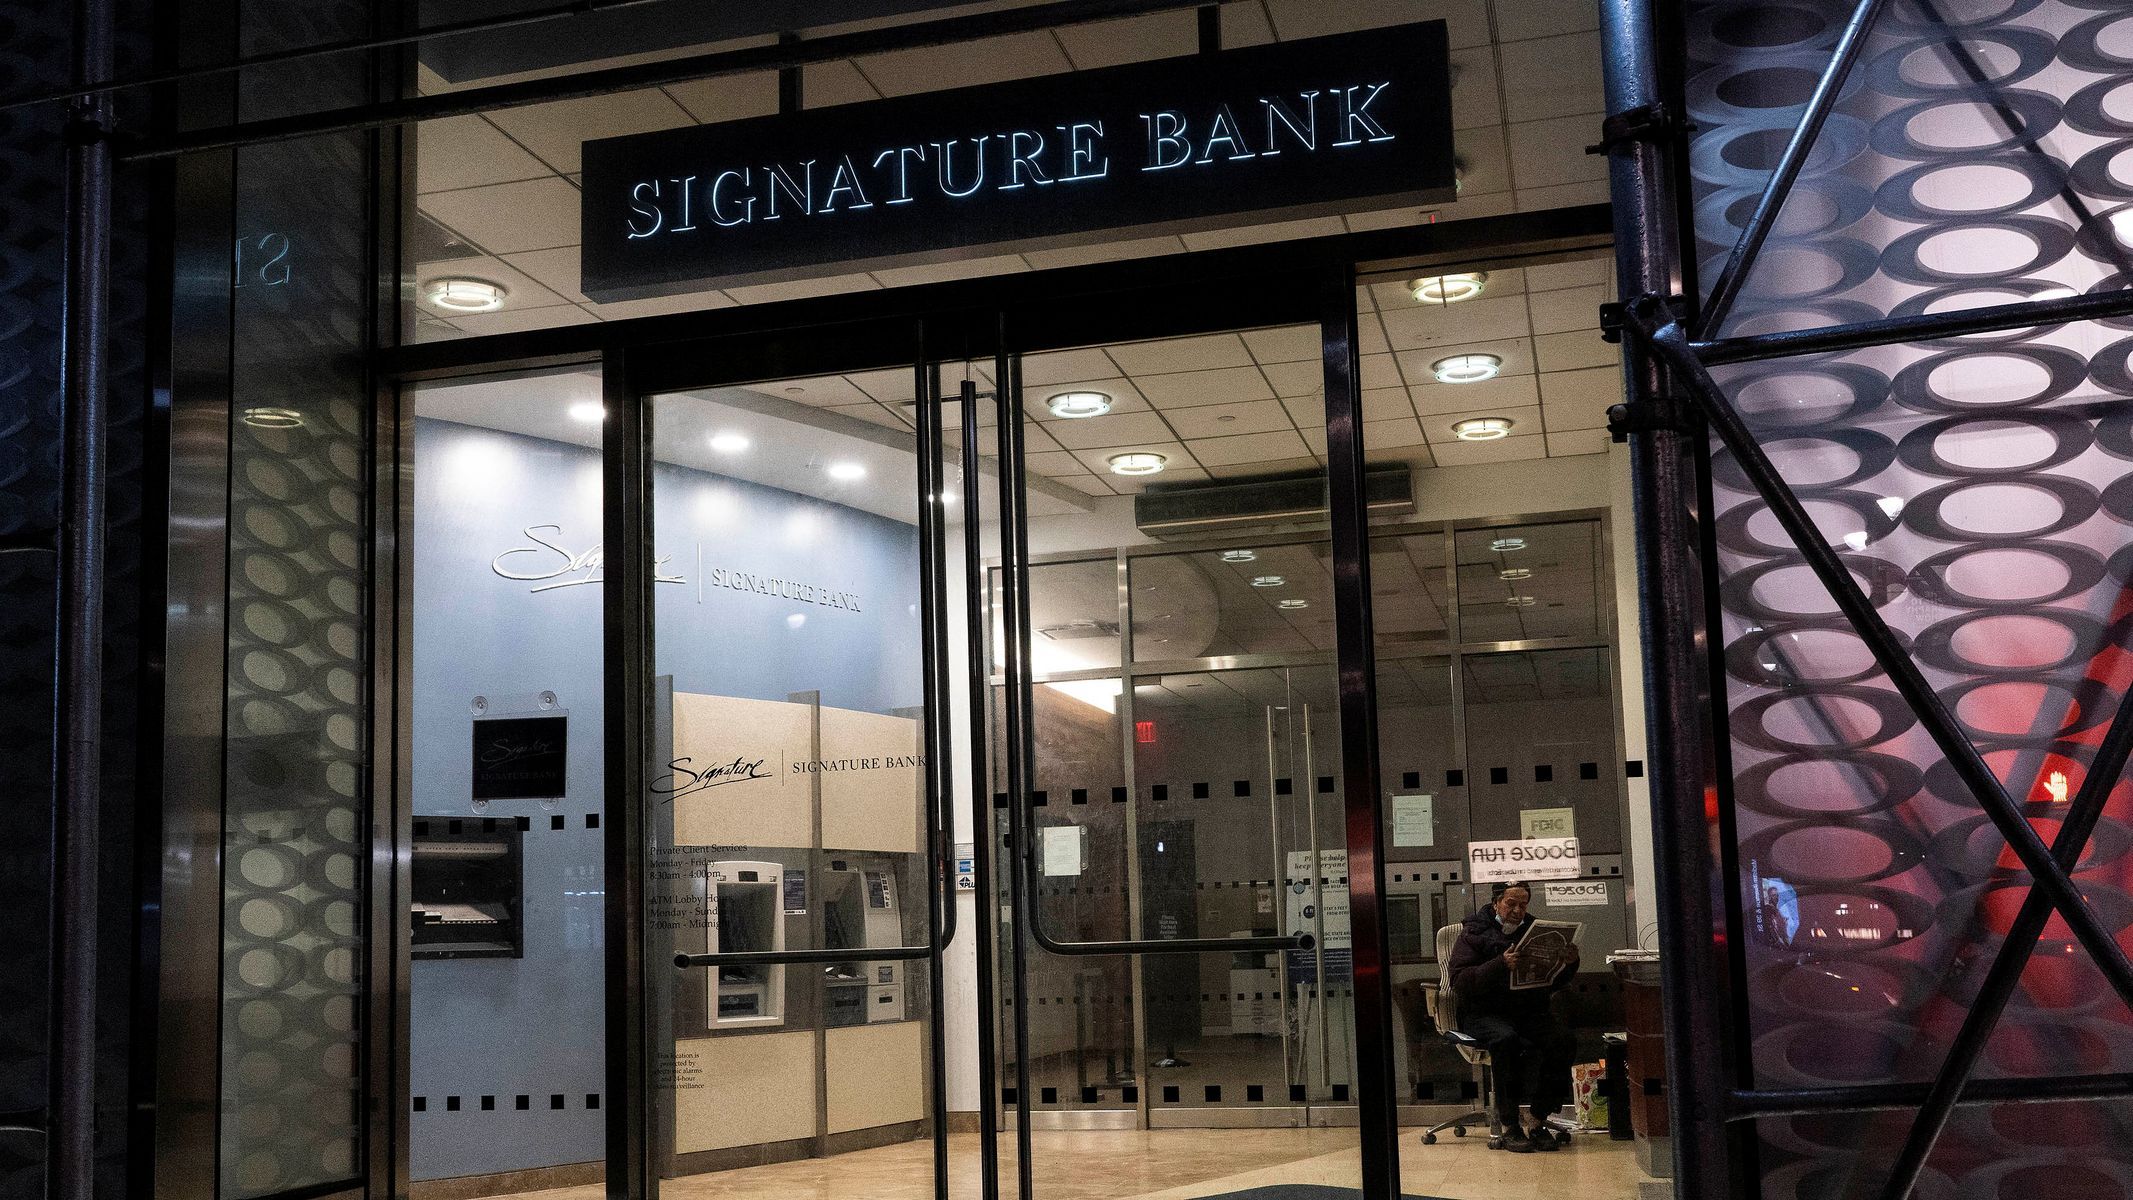 After SVB Signature Bank also went bankrupt